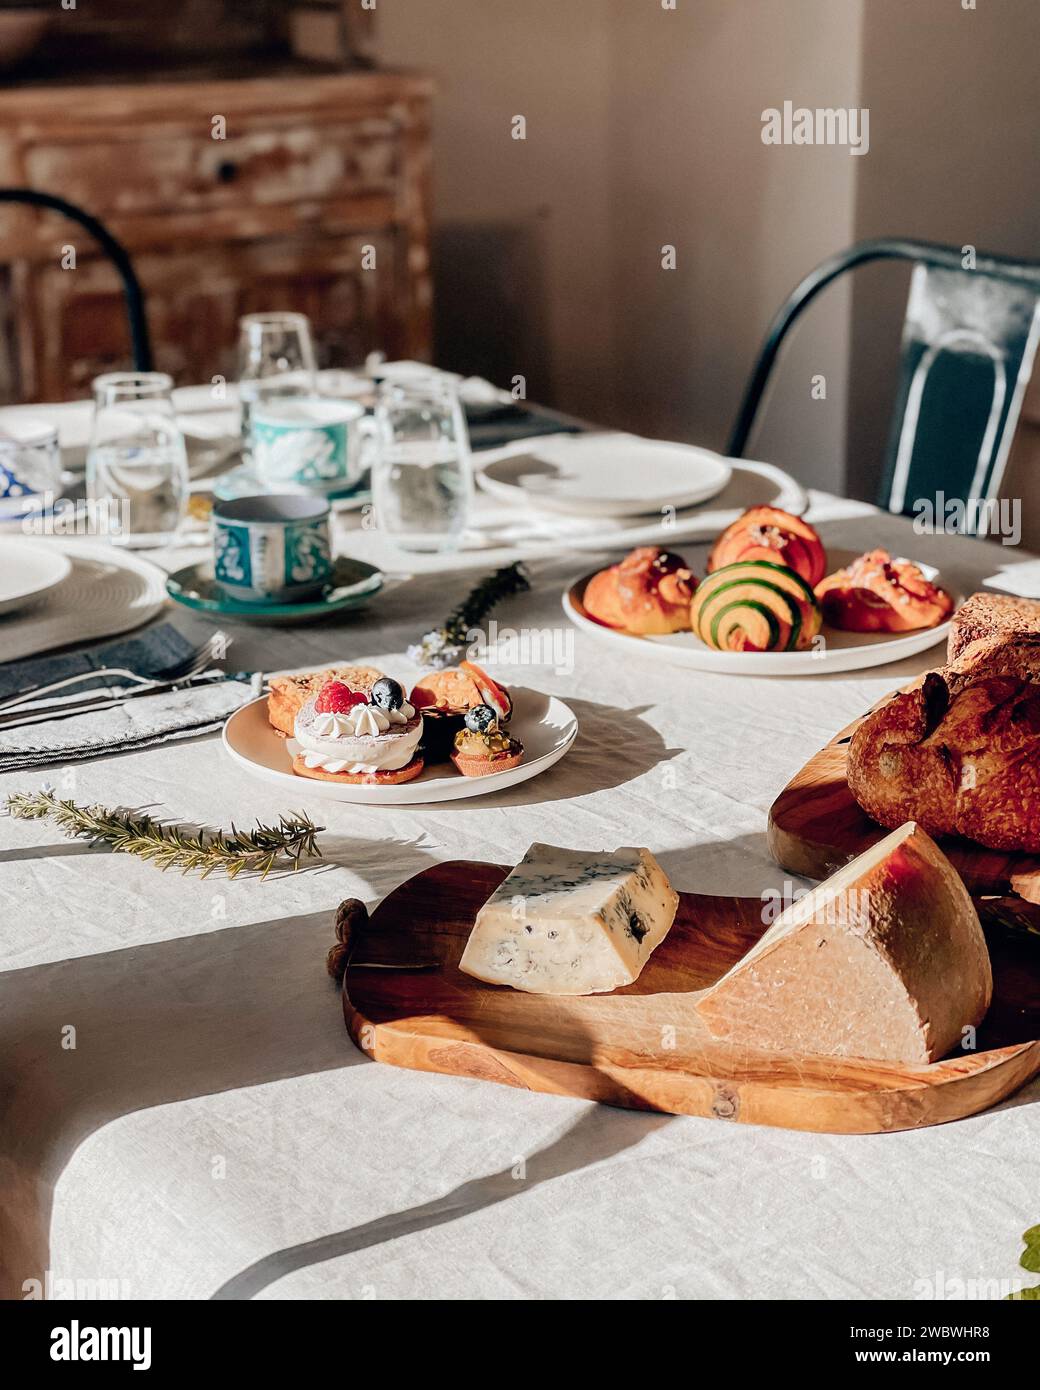 Une table élégamment mise ornée d'une table de petit déjeuner typiquement italienne Banque D'Images